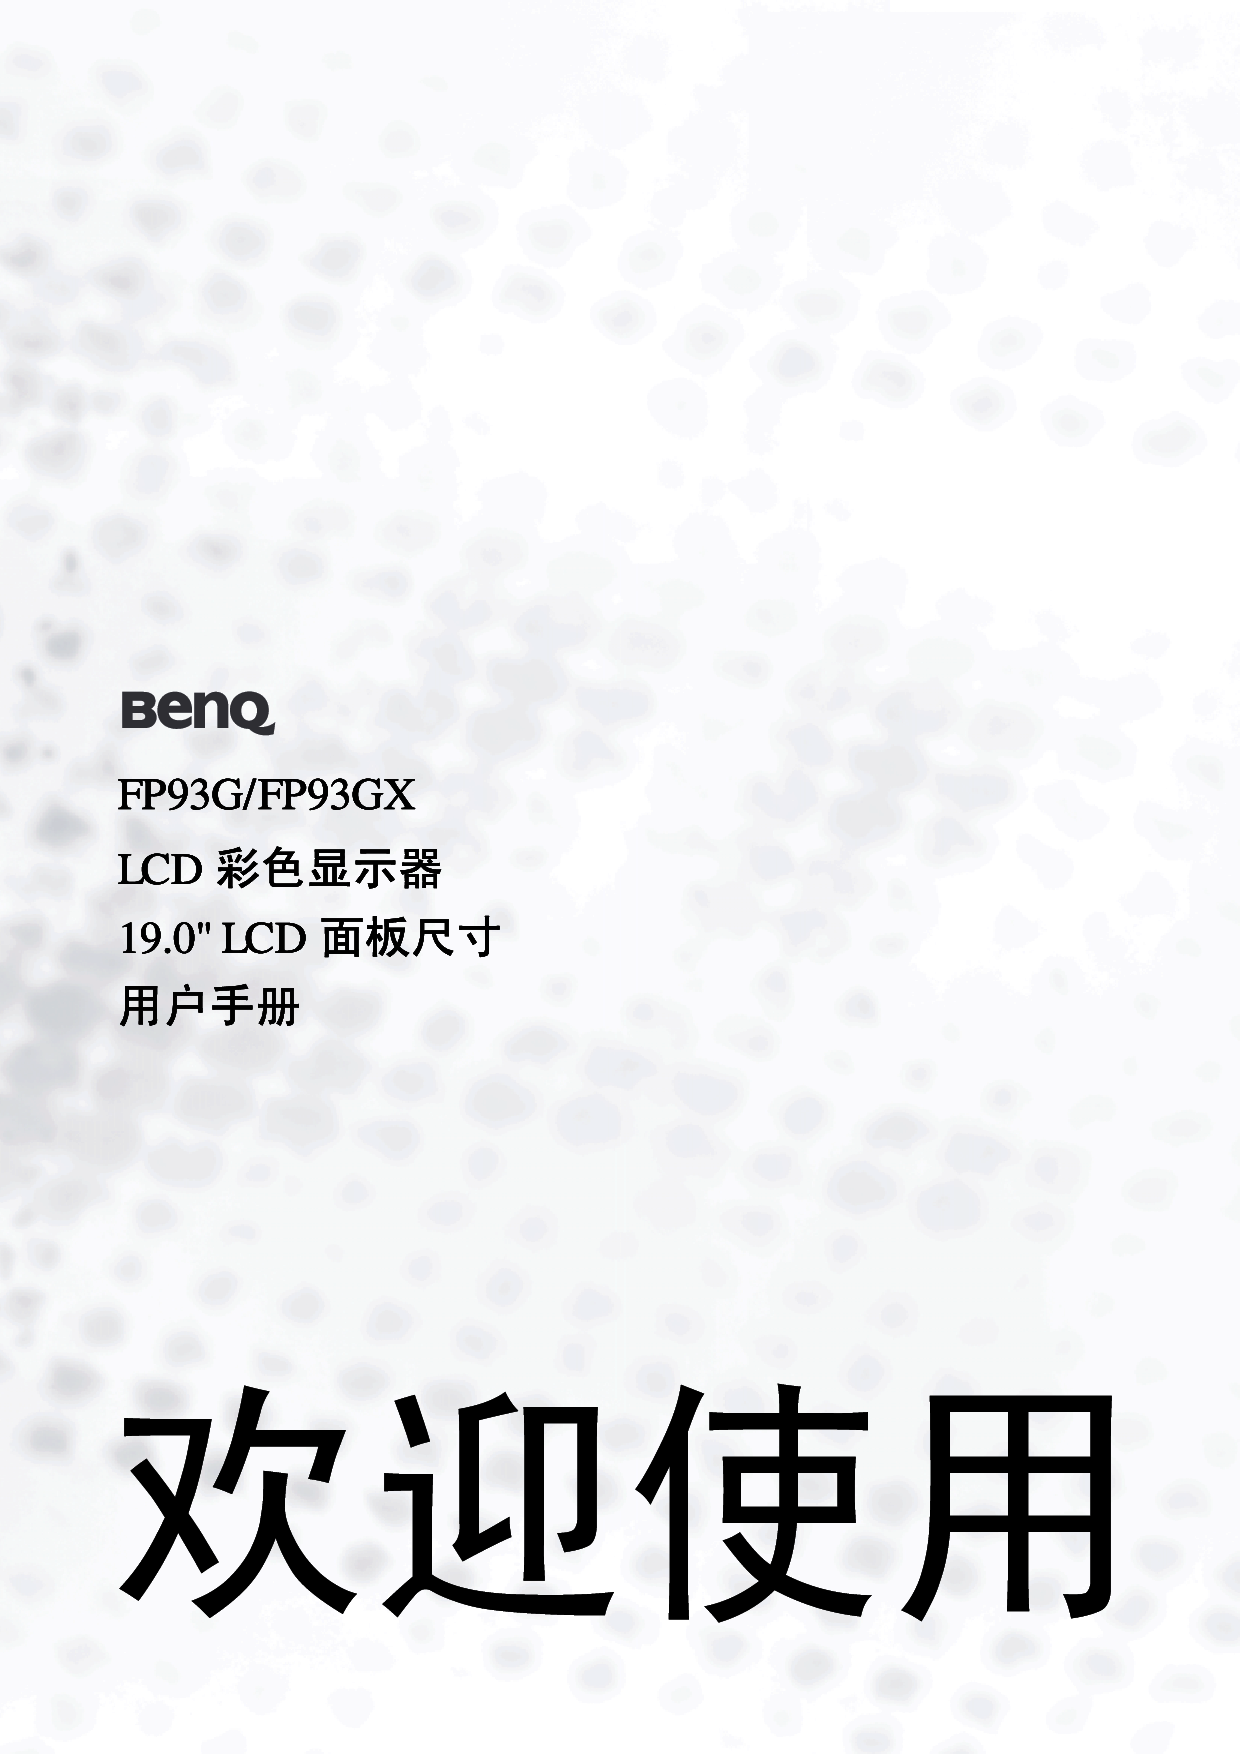 明基 Benq FP93G 使用手册 封面